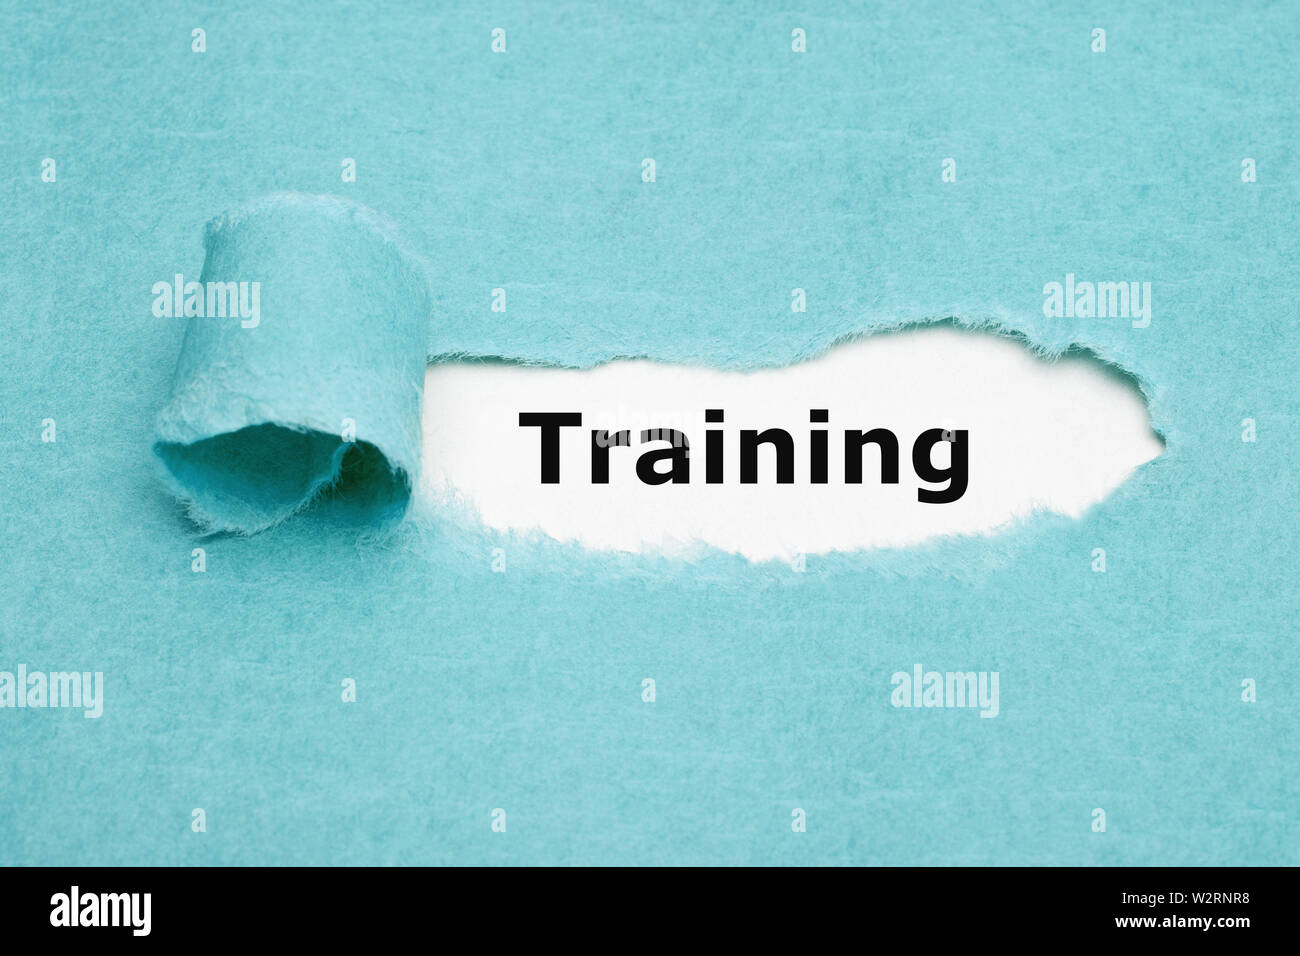 Gedruckte Wort Training erscheinen hinter zerrissen blaues Papier. Konzept über das Lernen und Üben neue Fähigkeiten für einen bestimmten Job. Stockfoto